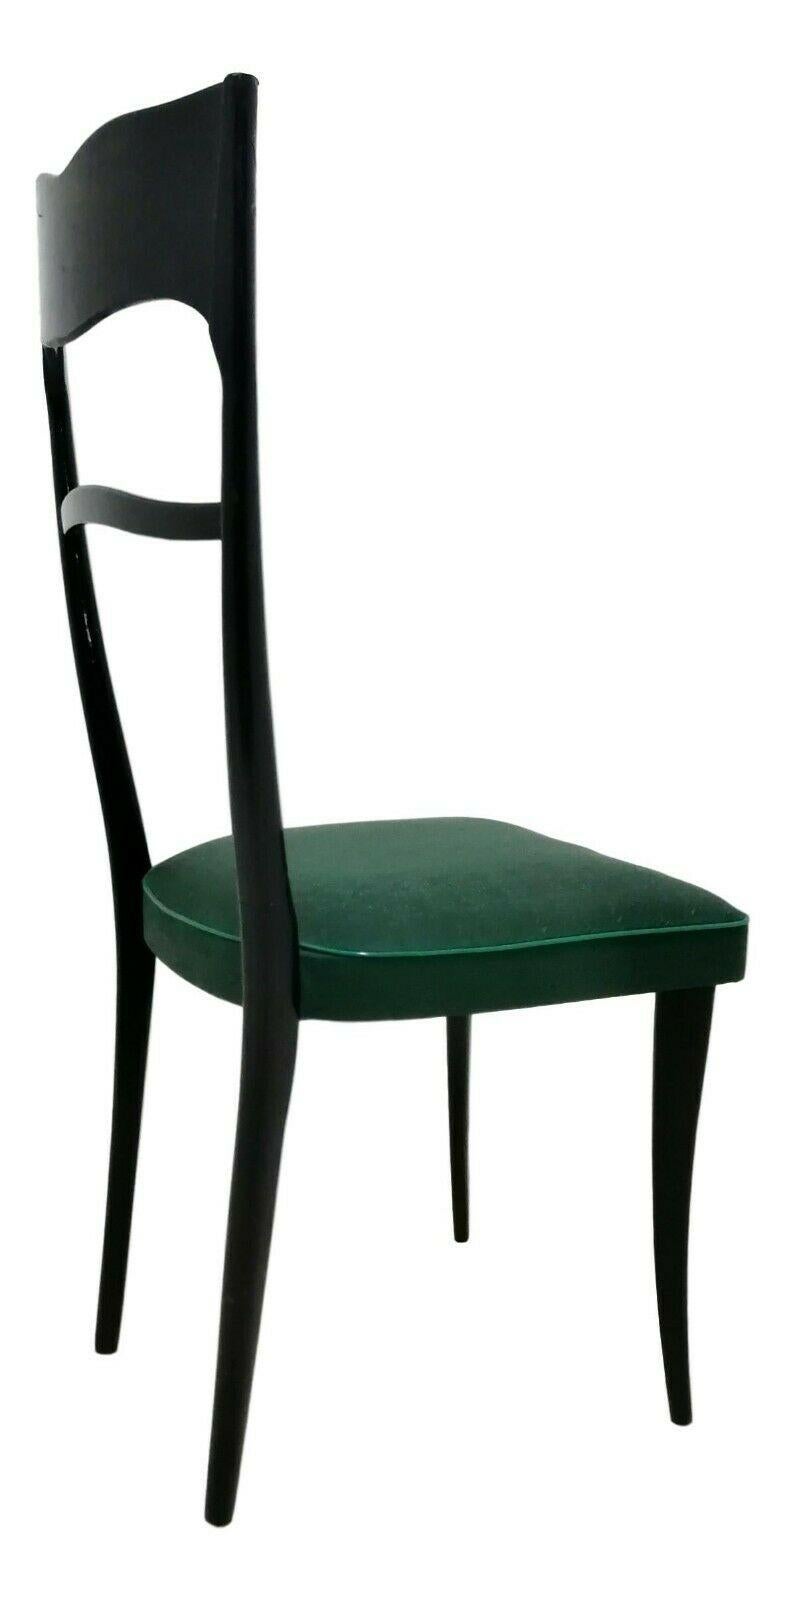 Satz von vier italienischen Designstühlen aus den 1960er Jahren, elegante Ausführung, aus Holz, wahrscheinlich Nussbaum, mit flaschengrüner Skay-Polsterung

sie messen 100 cm in der Höhe, 45 cm in der Breite, 50 cm in der Tiefe und etwa 45 cm in